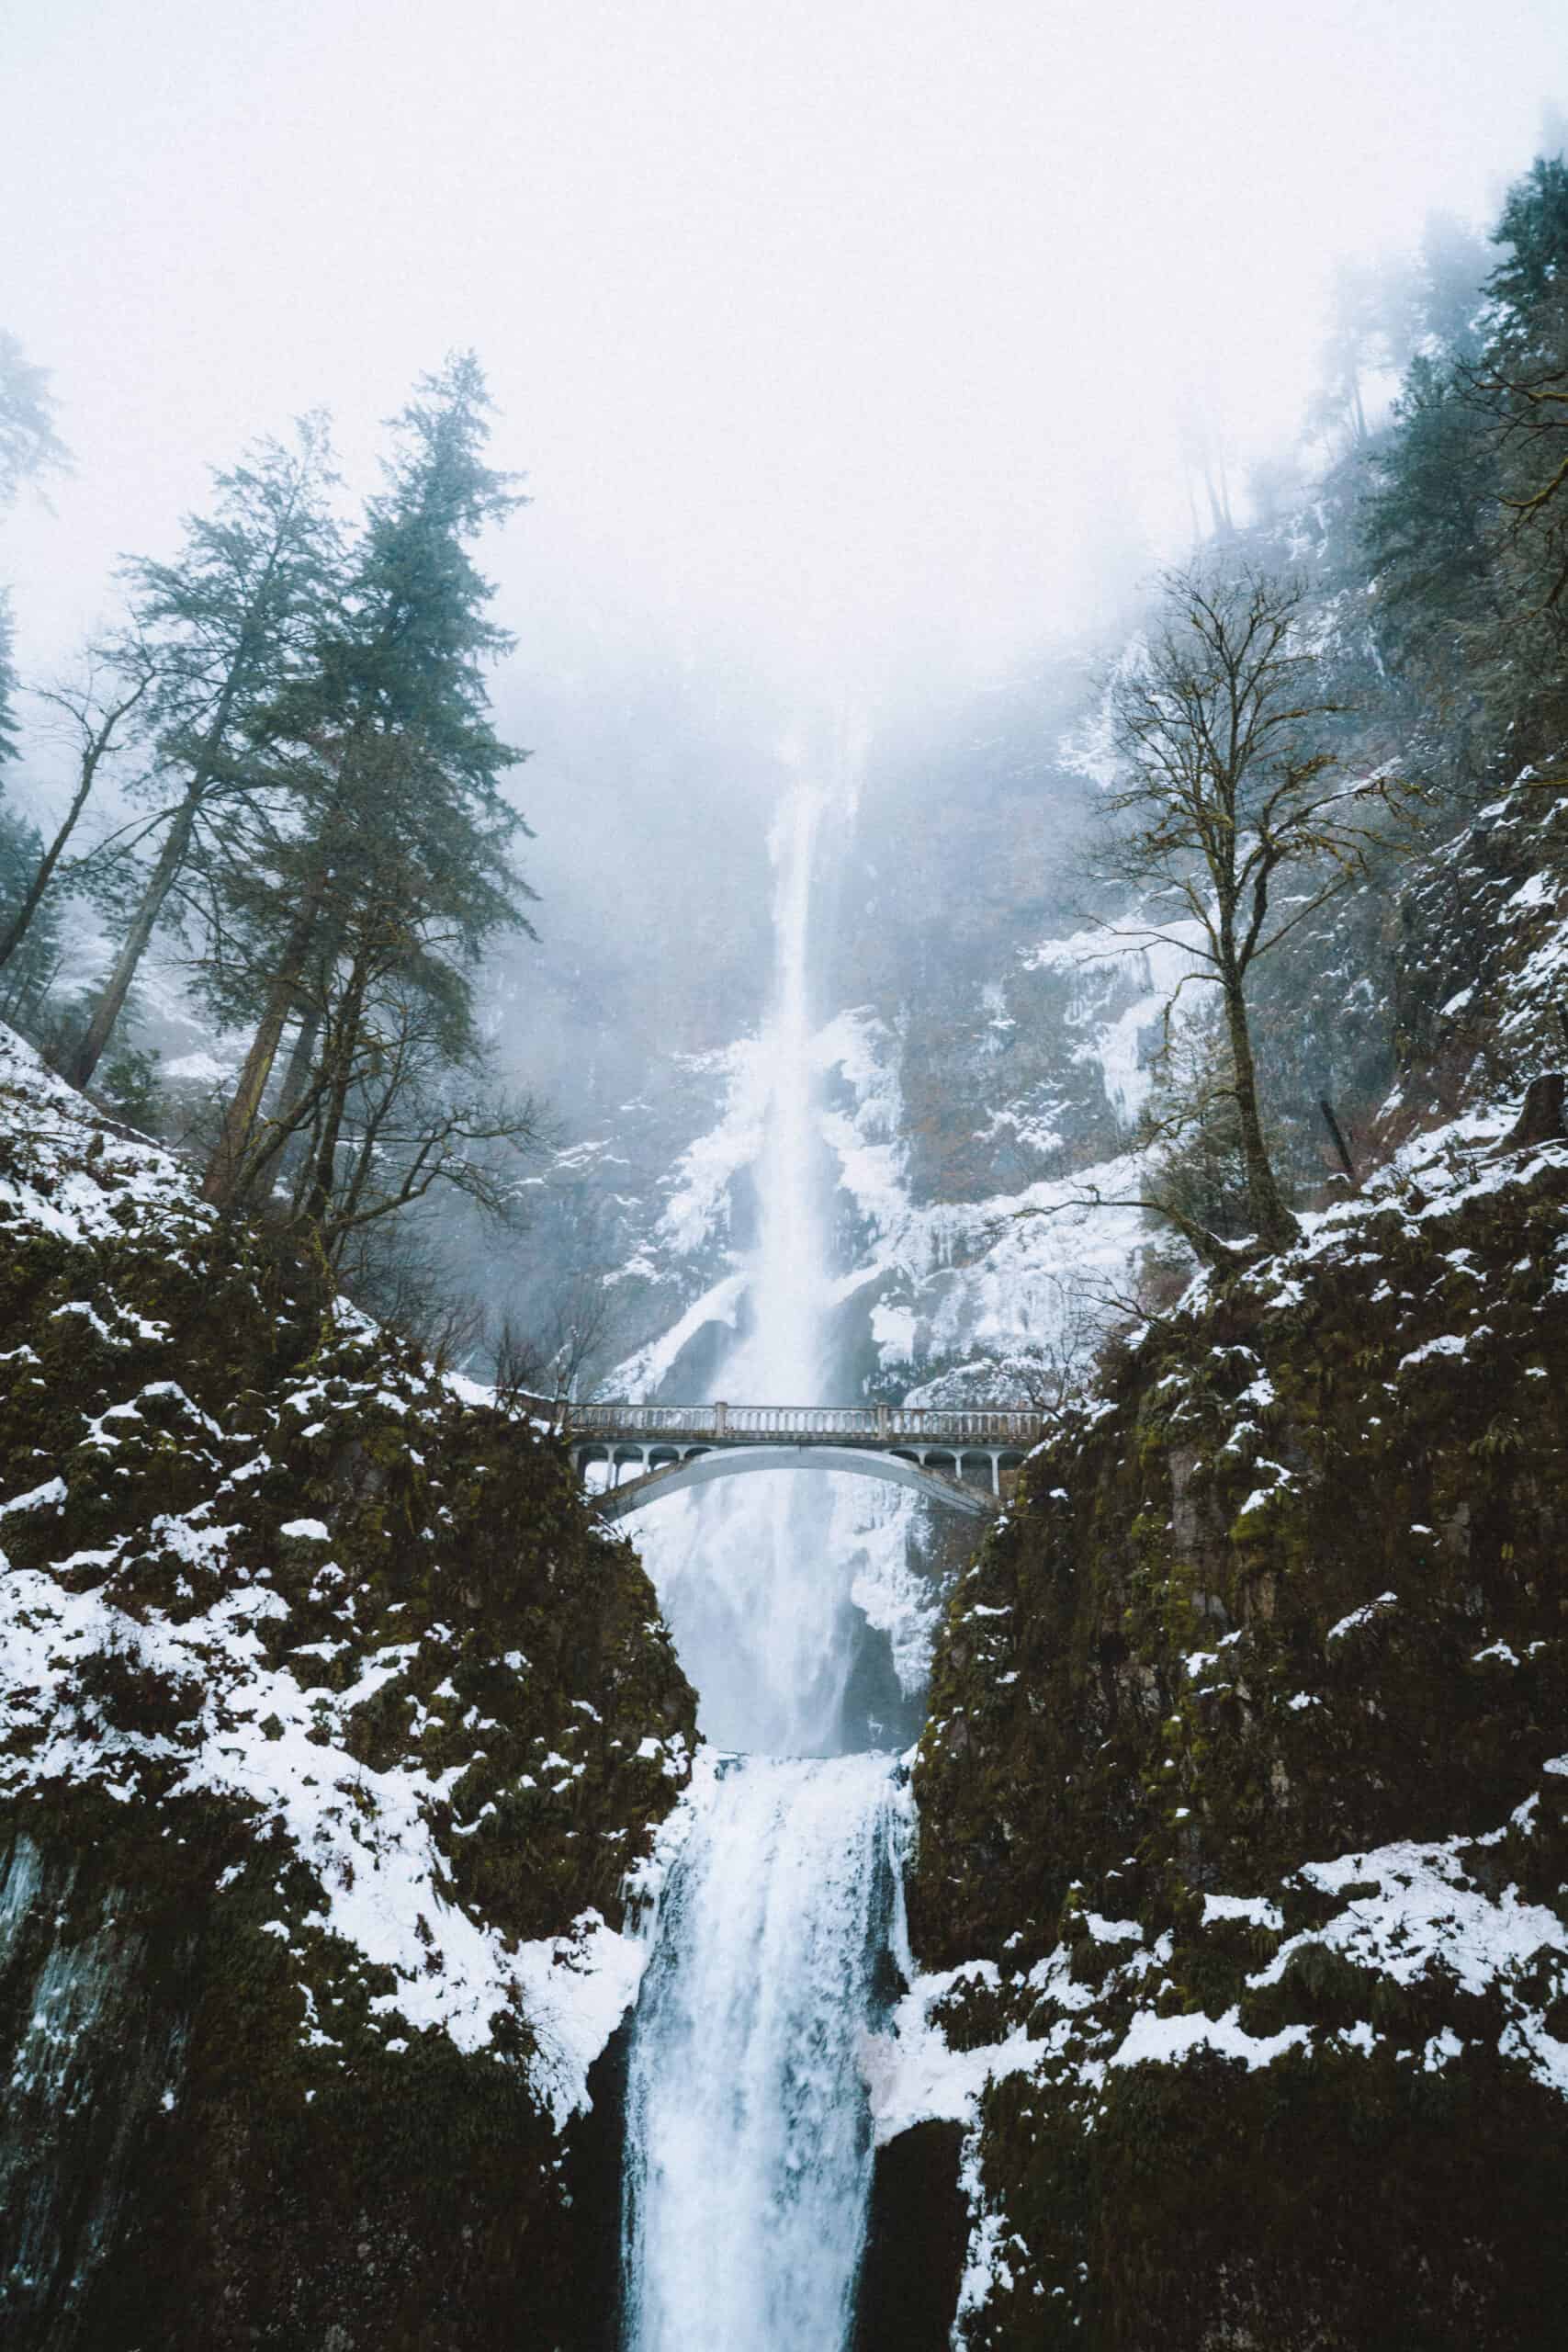 Winter season in Oregon - frozen Multnomah Falls